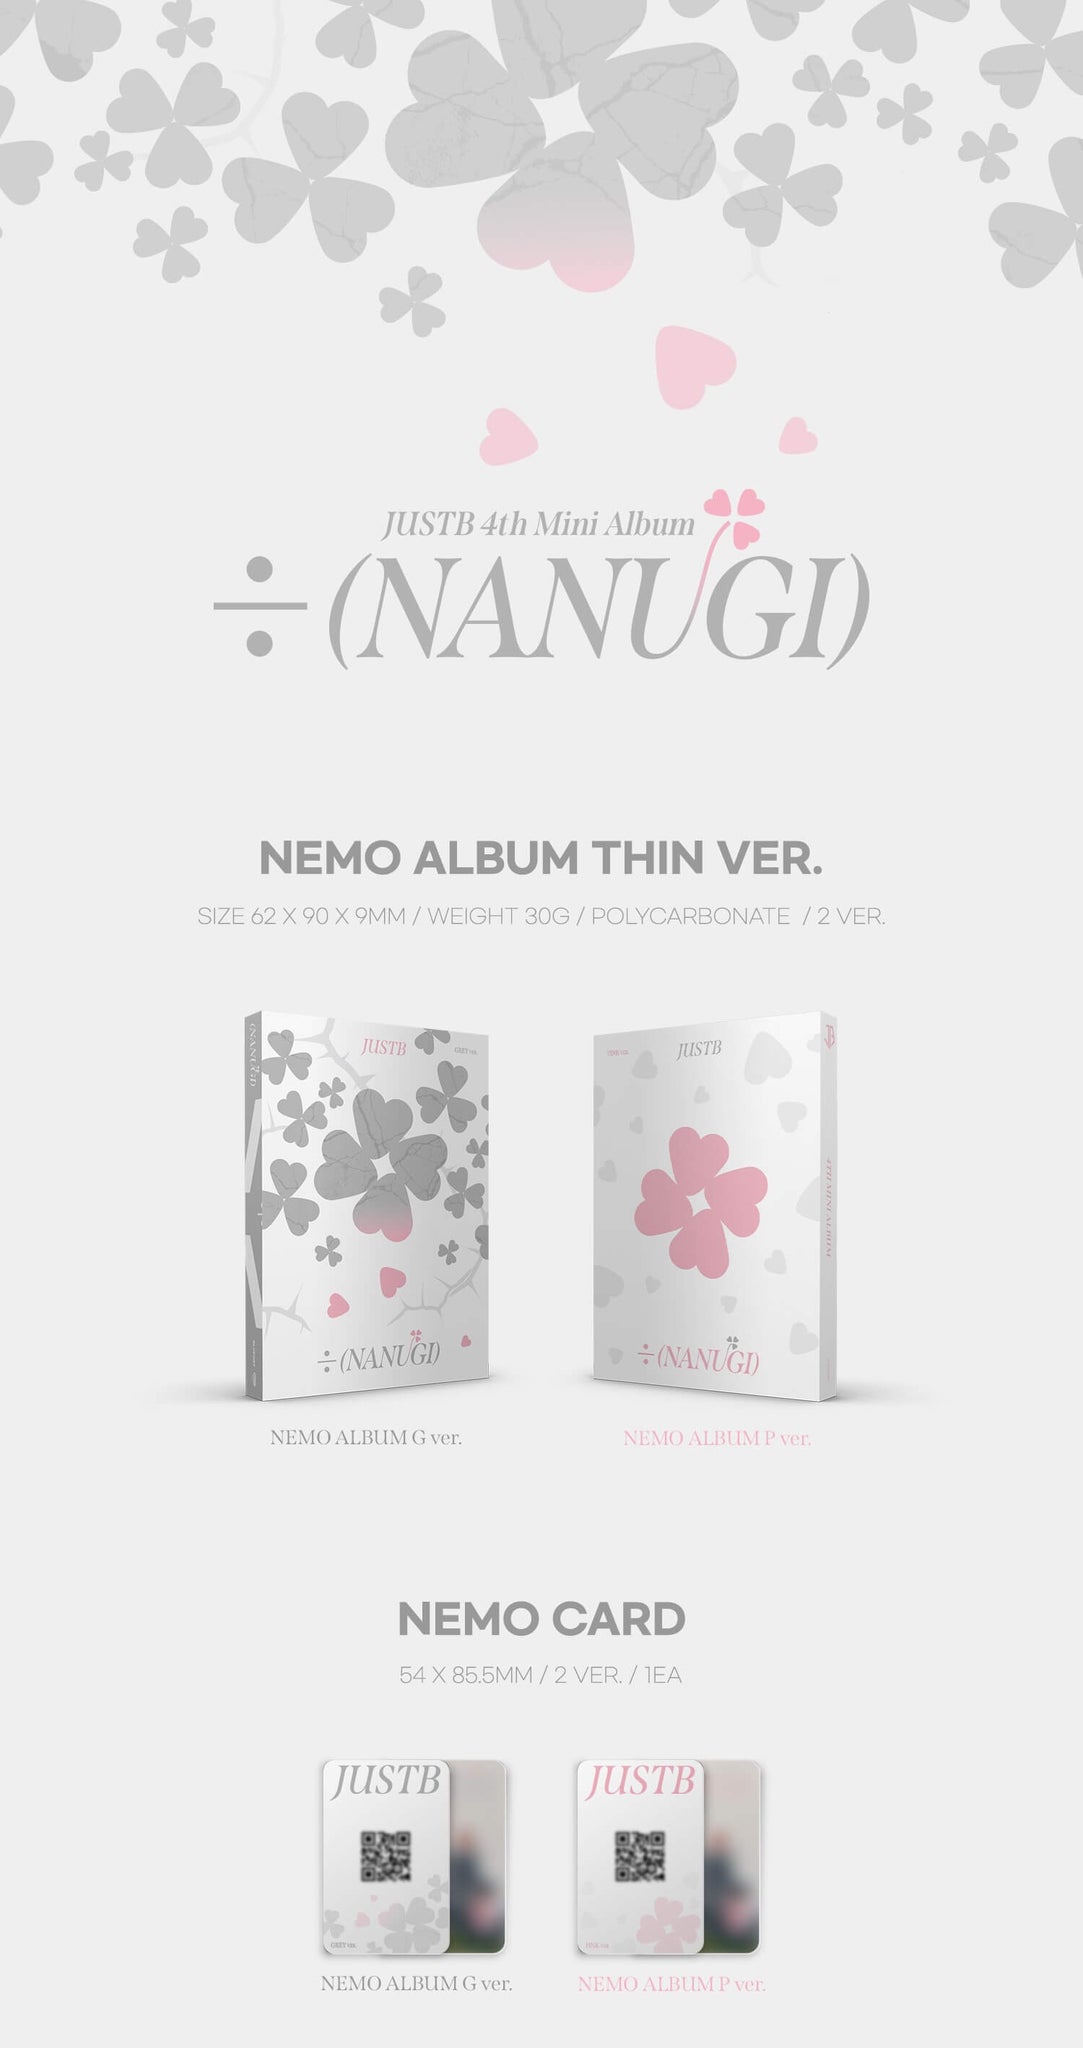 JUST B 4th Mini Album ÷ (NANUGI) Nemo Album Inclusions Album Case Nemo Card